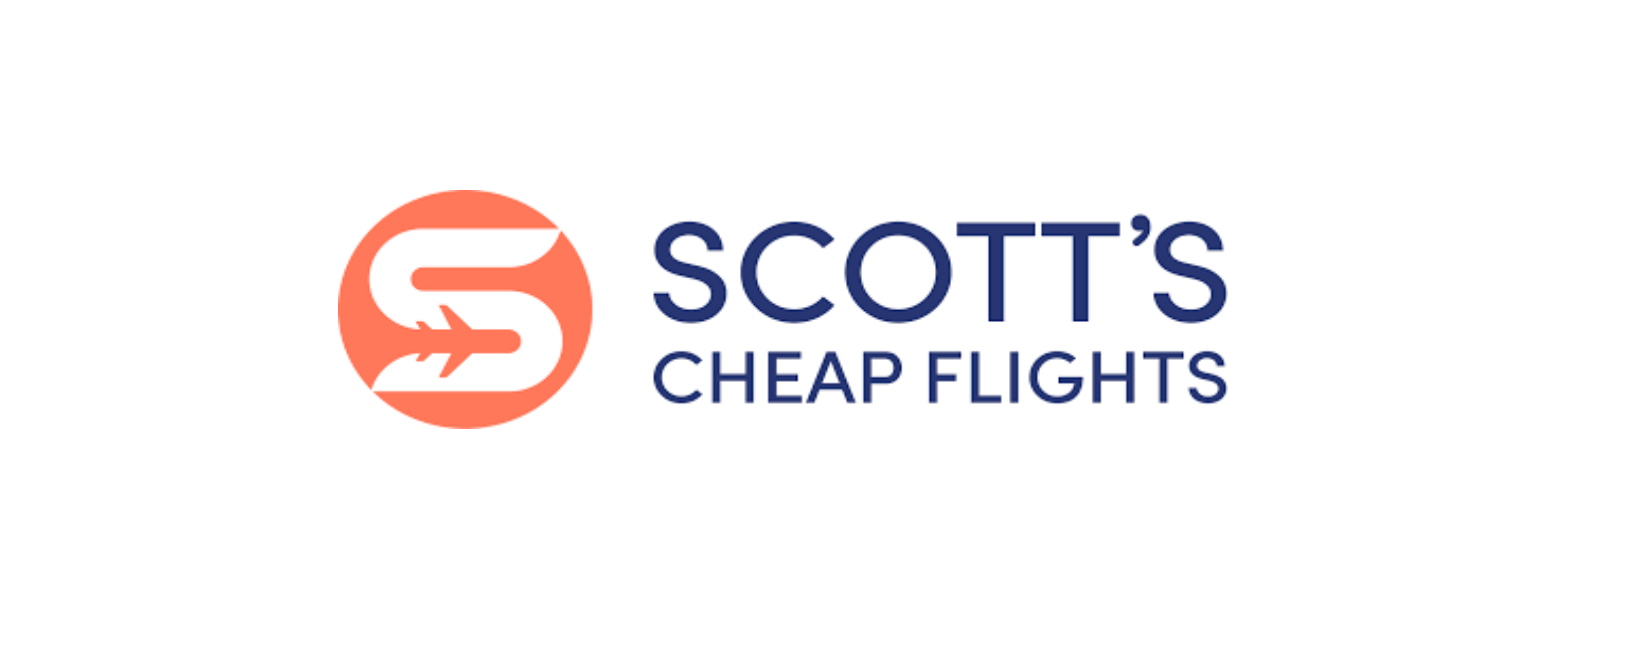 Scott's Cheap Flights Discount Code 2022